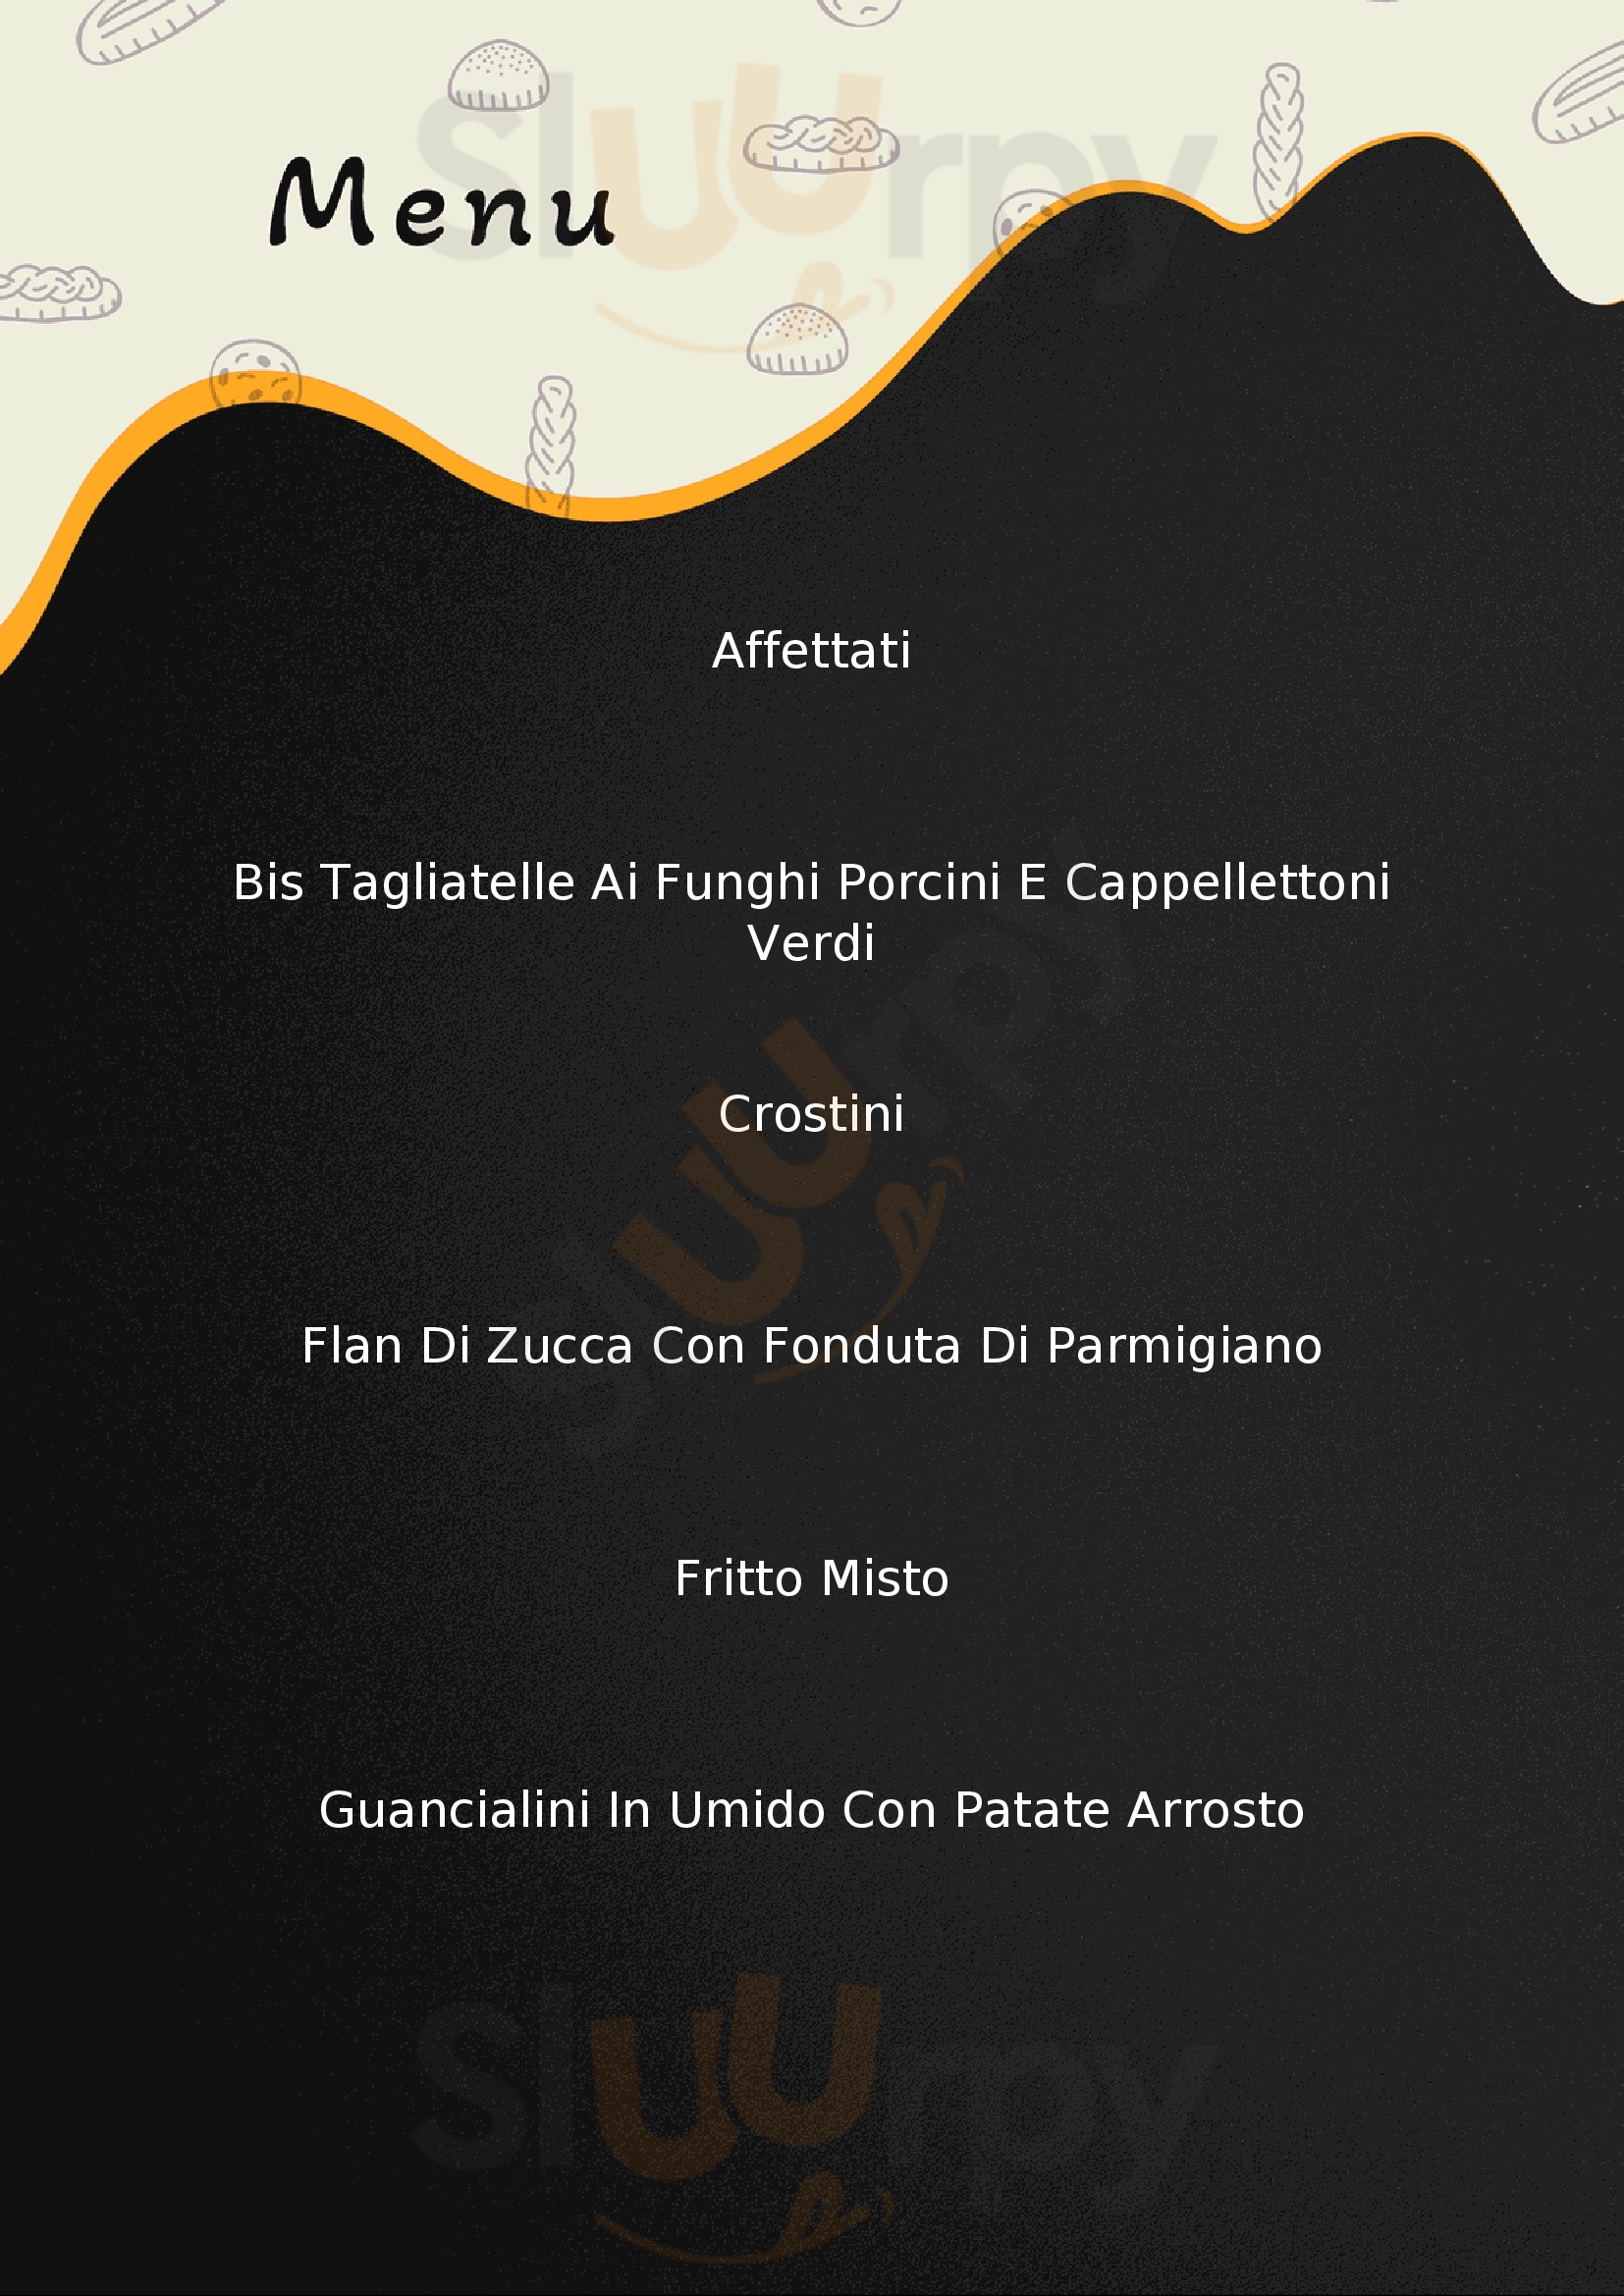 Osteria Baccabianca Campegine menù 1 pagina